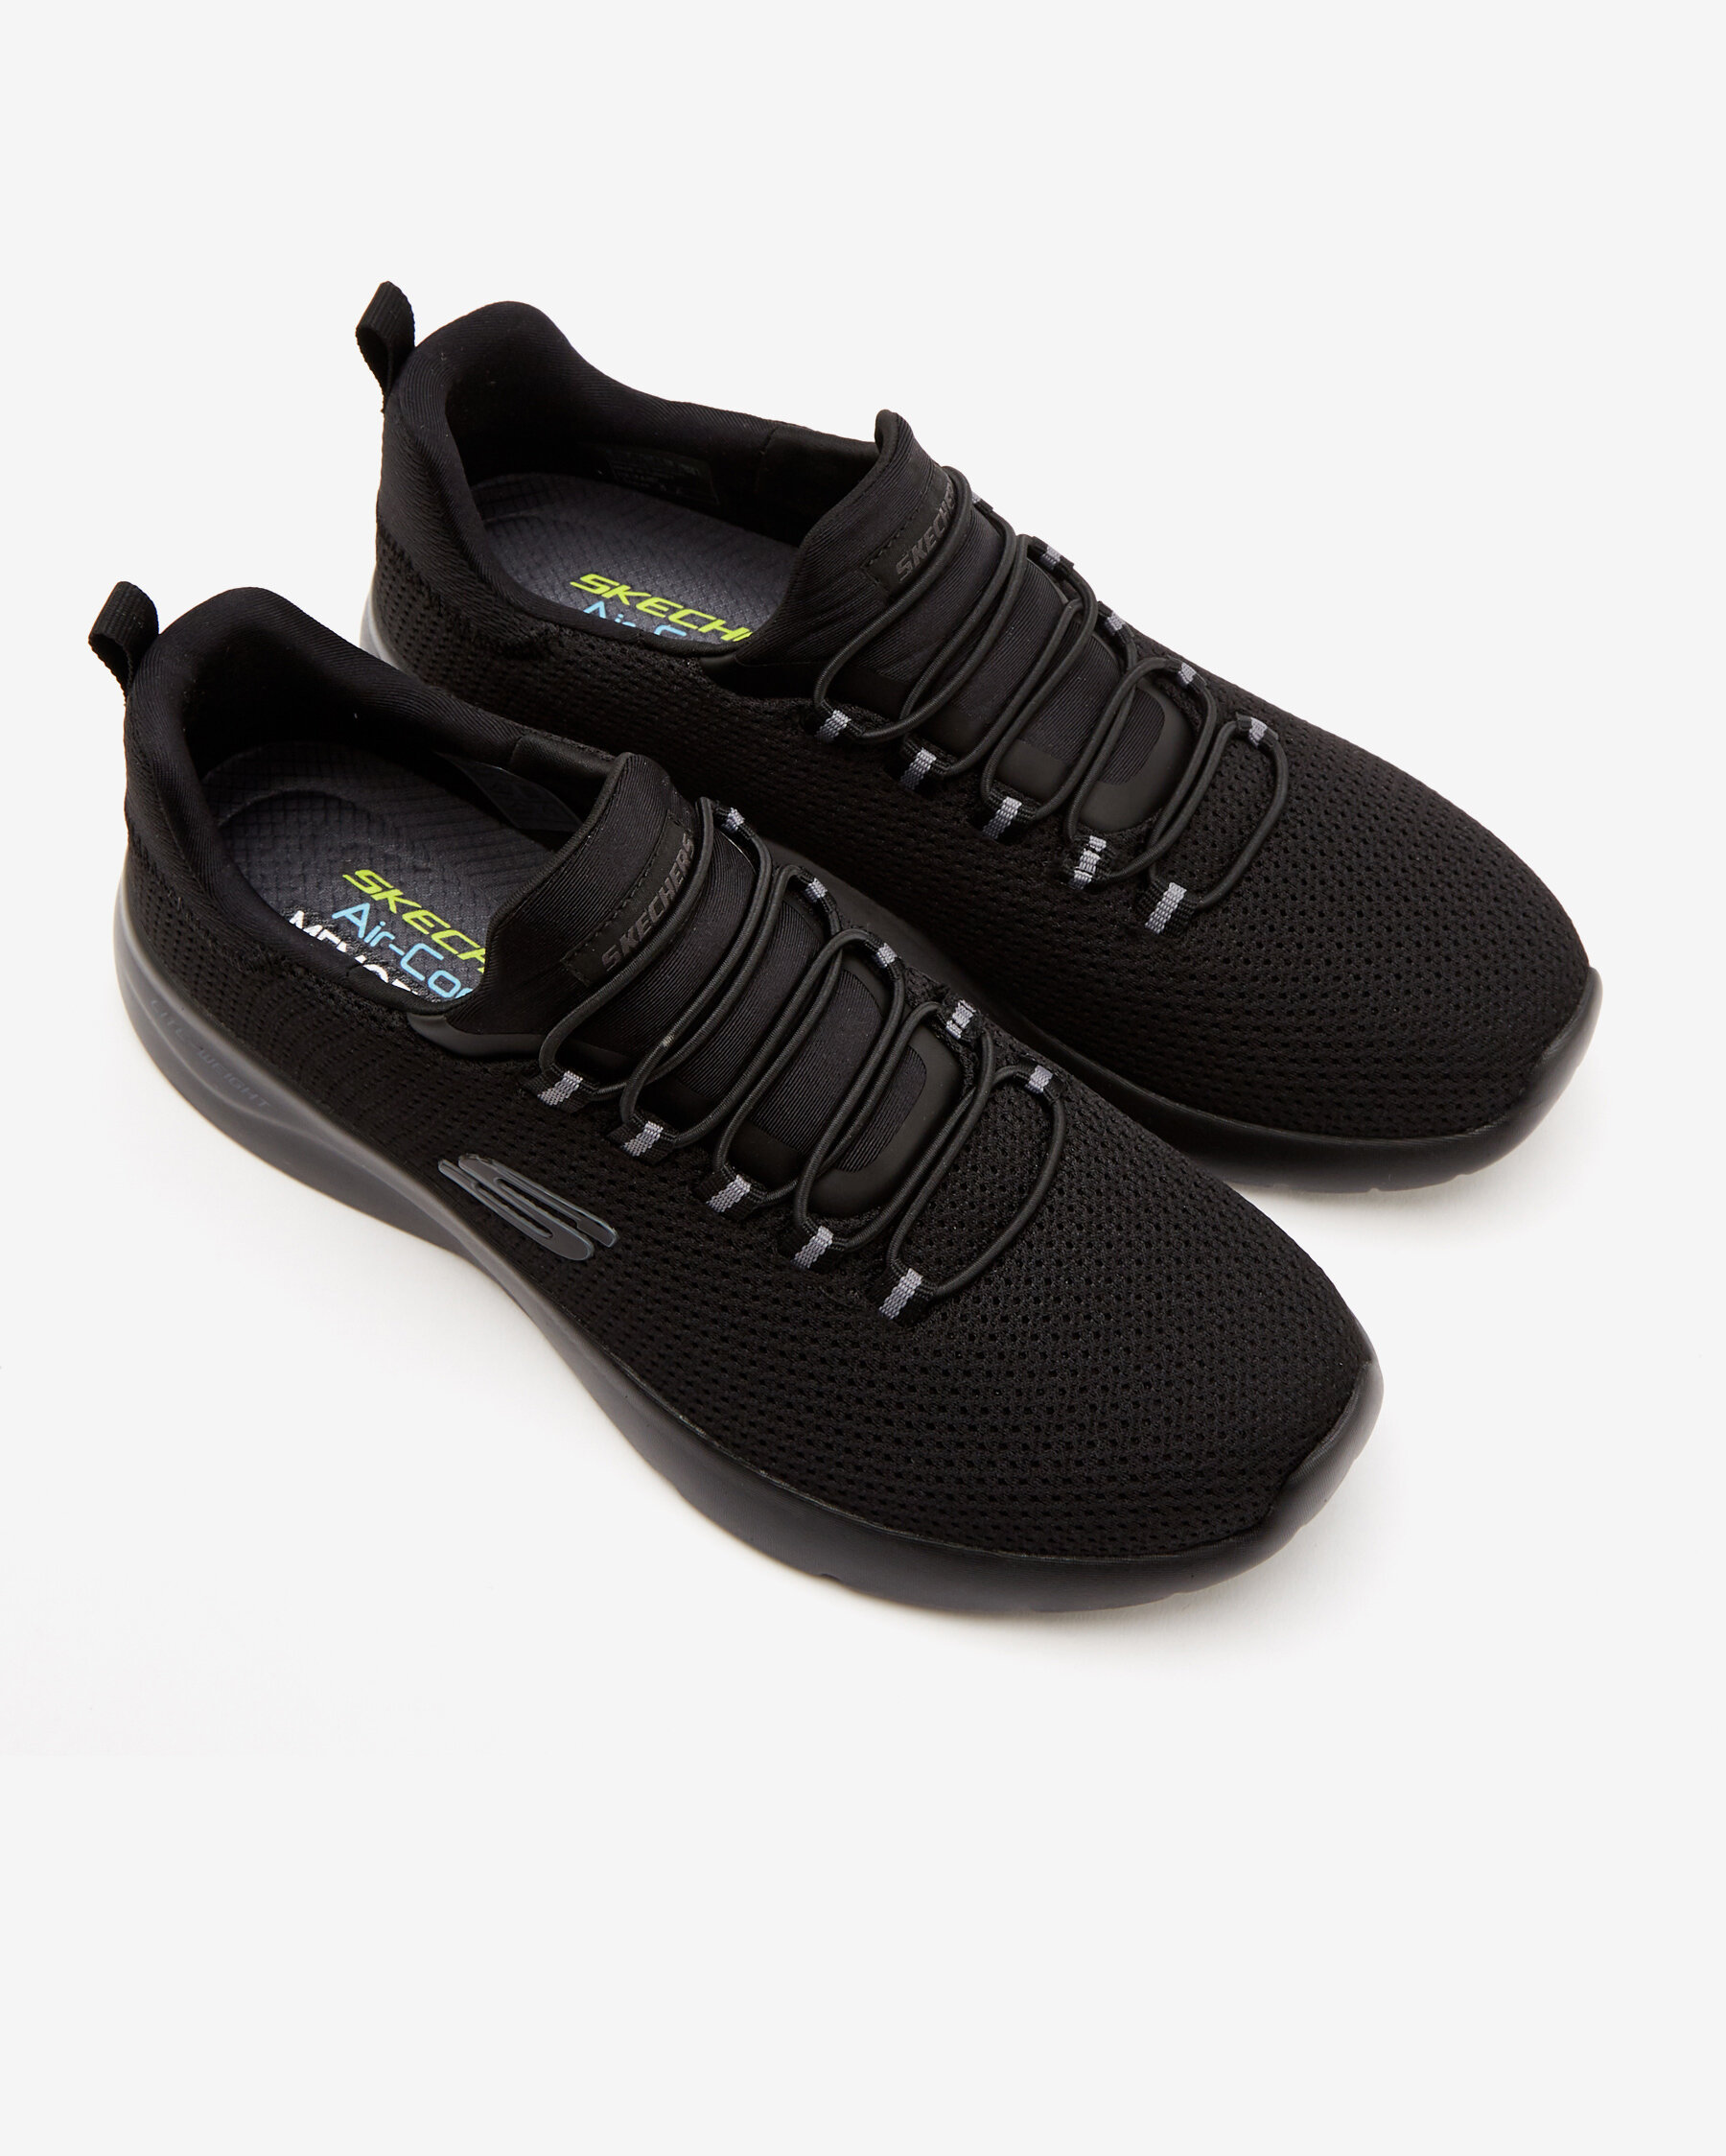 Skechers Dynami̇ght Siyah Spor Ayakkabı (894114TK BBK)